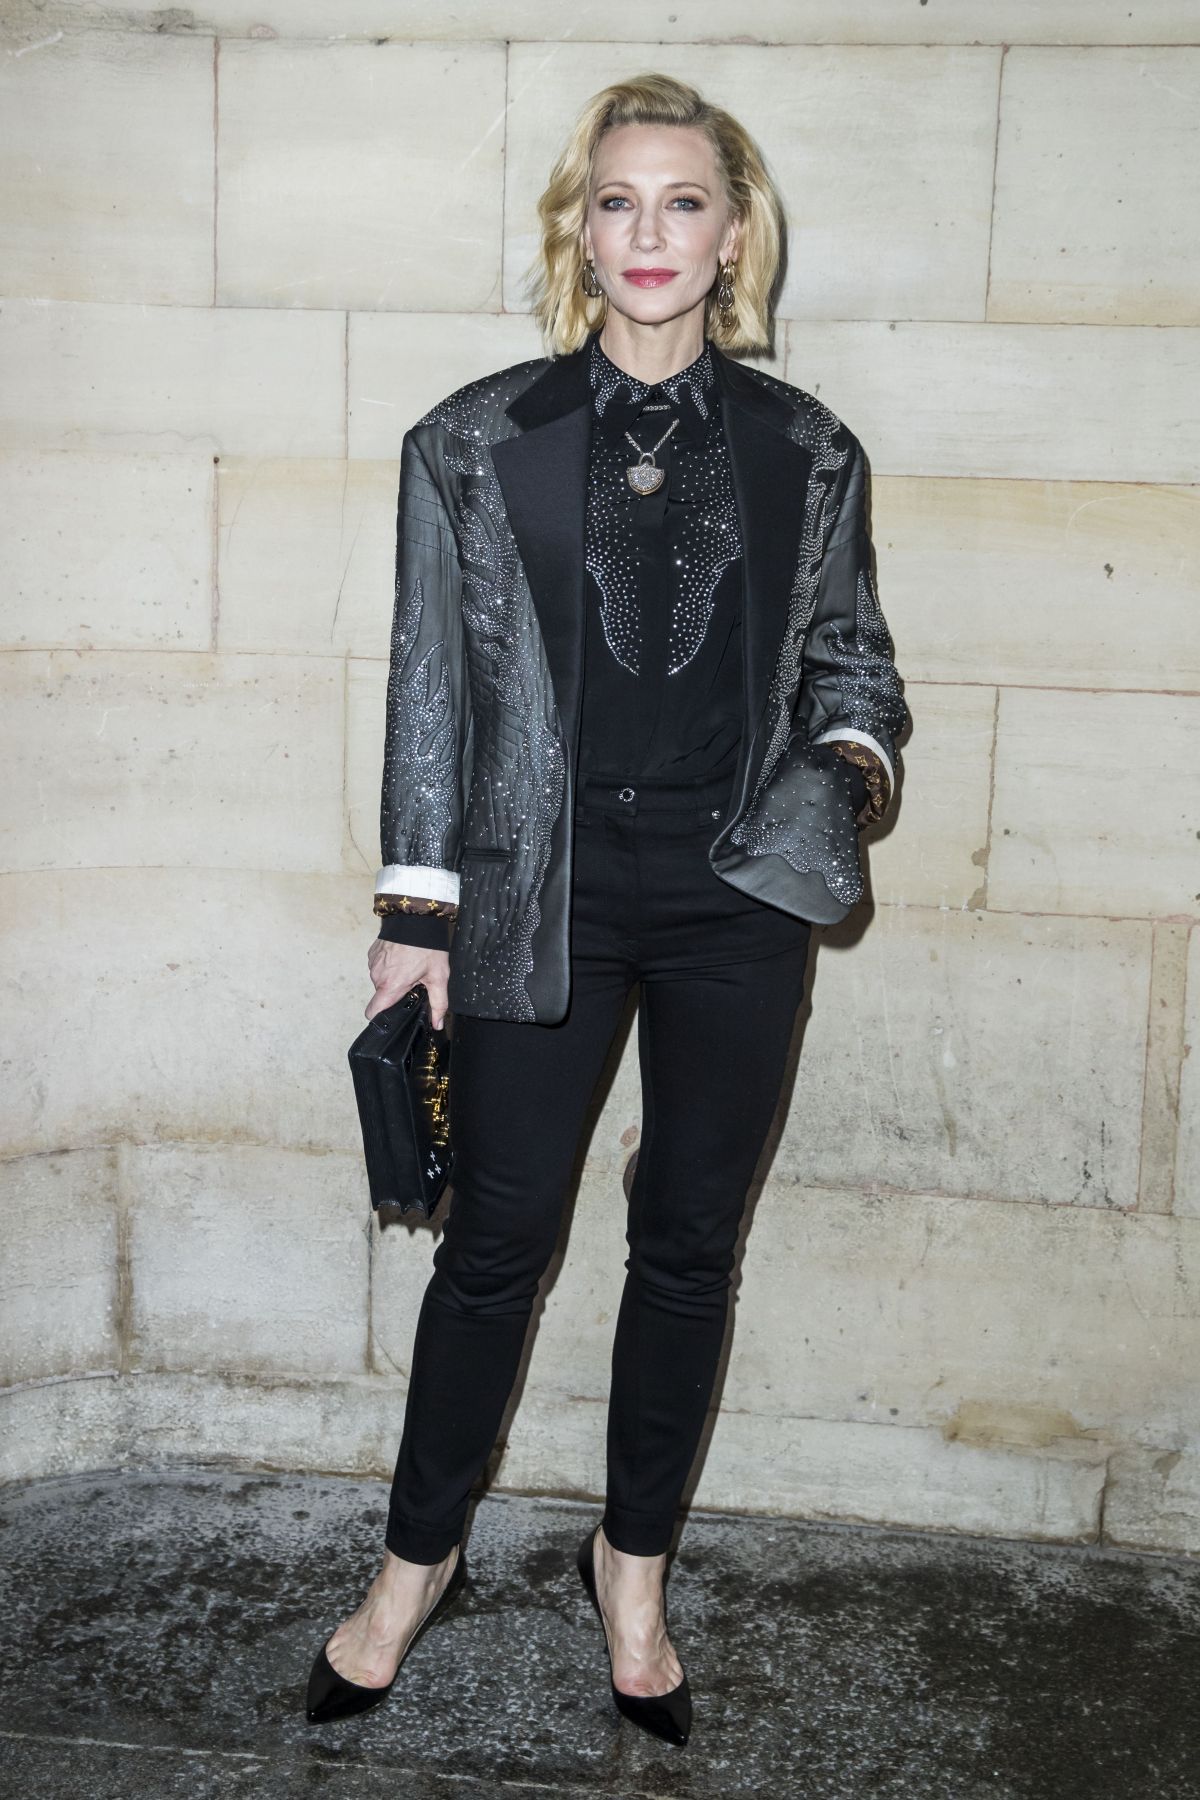 CATE BLANCHETT at Louis Vuitton Fashion Show in Paris 10/02/2018 ...